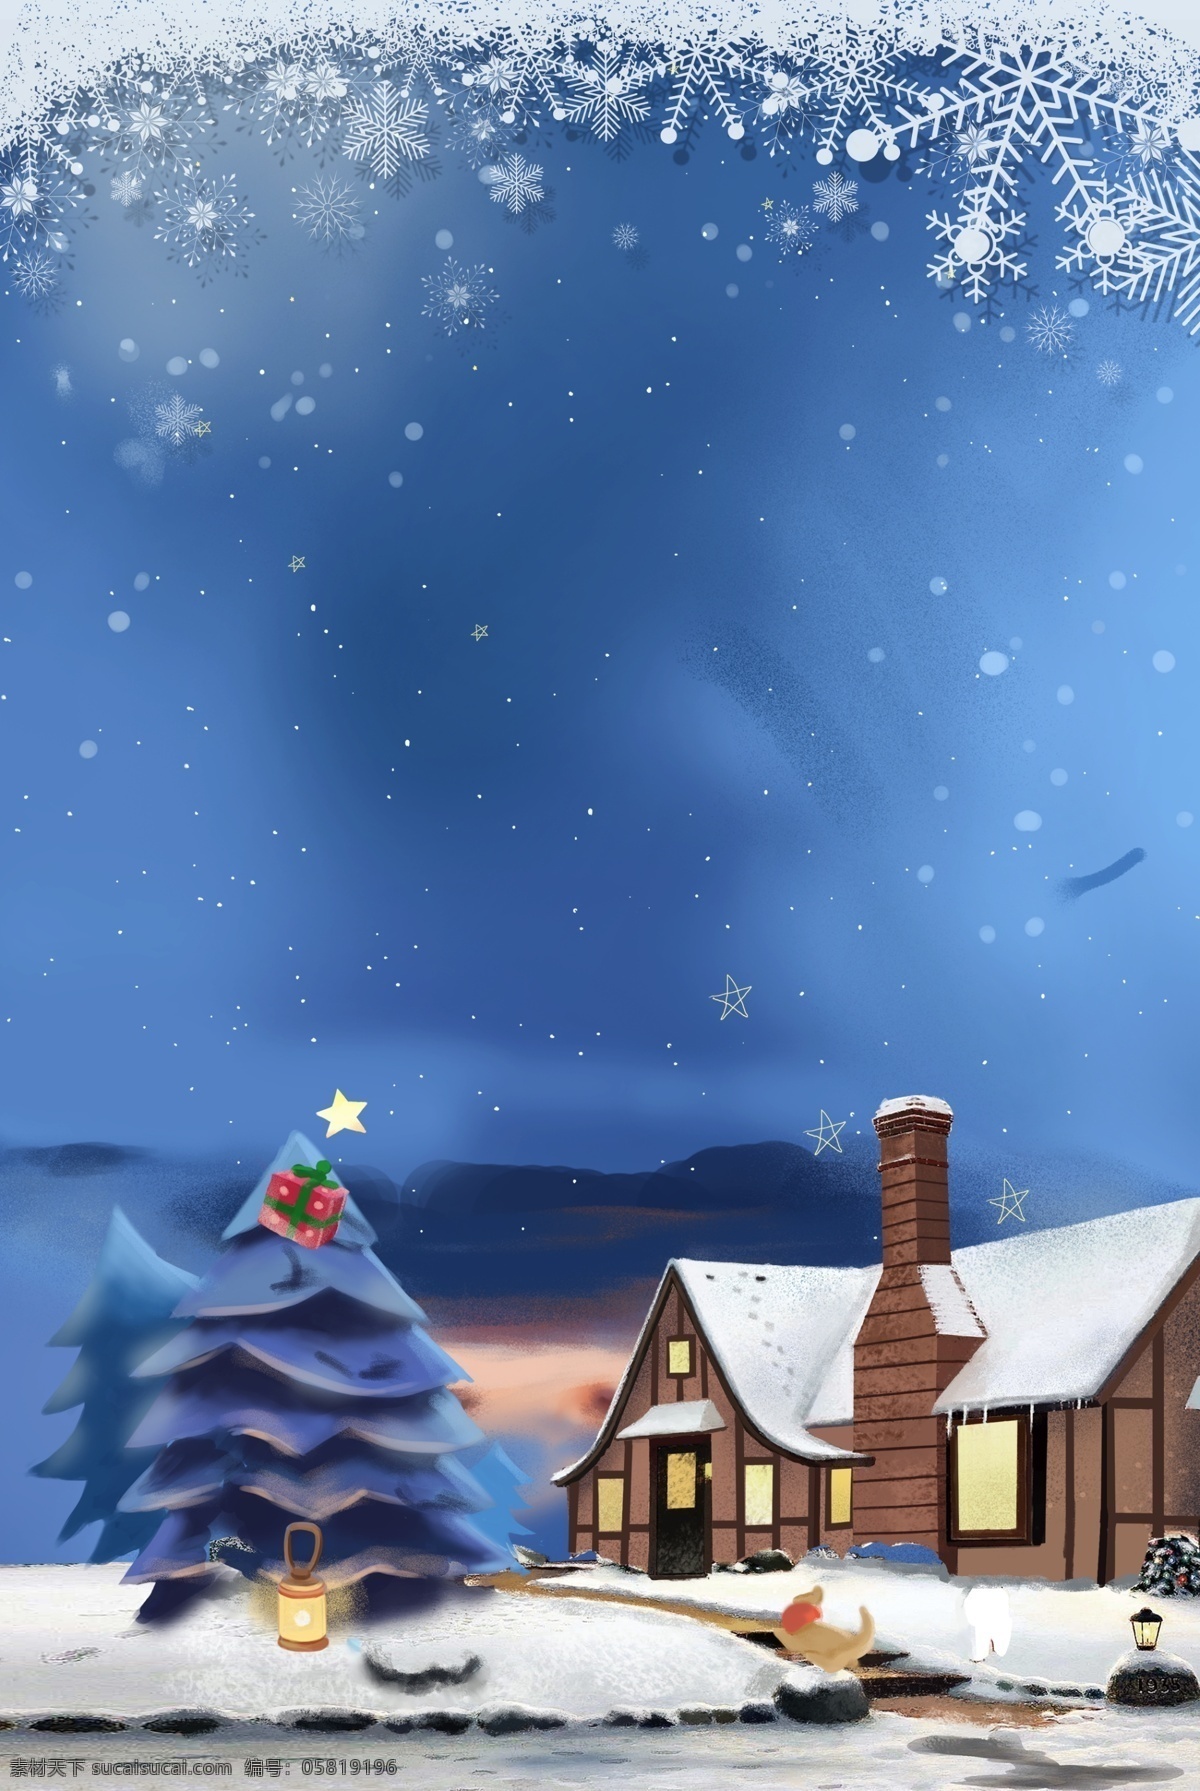 唯美 蓝色 圣诞 冬季 背景 雪花 圣诞背景 冬天 城堡 冬季背景 大寒 下雪 psd背景 雪屋 平安夜